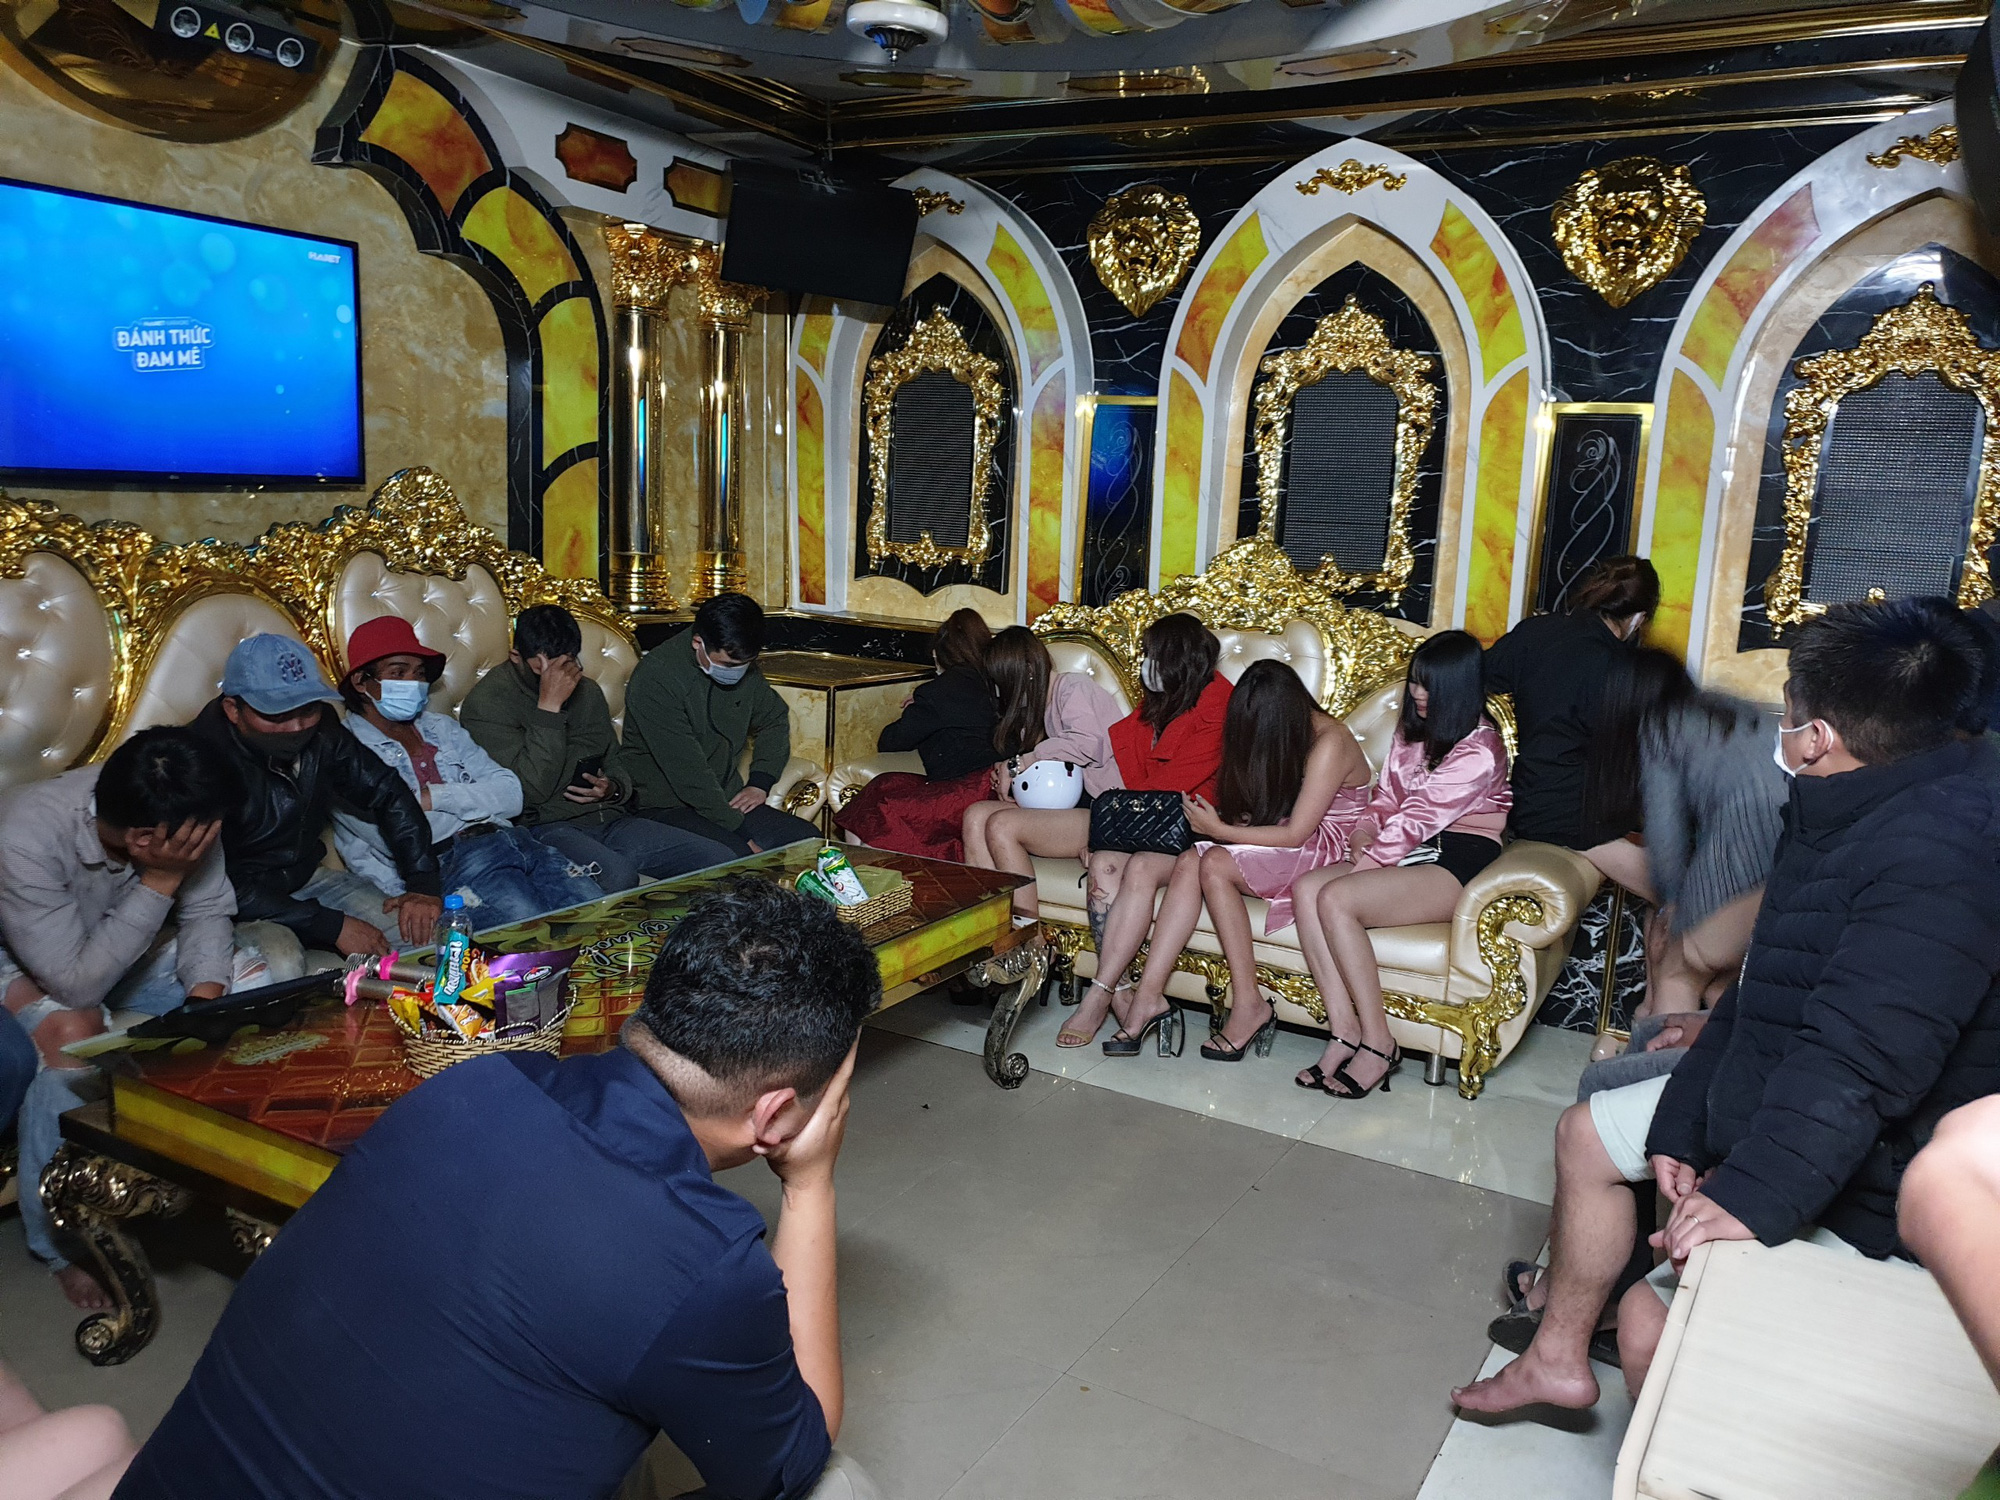 Lâm Đồng: 2 quán karaoke cùng địa chỉ bất chấp dịch Covid-19, 46 người tụ tập hát hò - Ảnh 2.